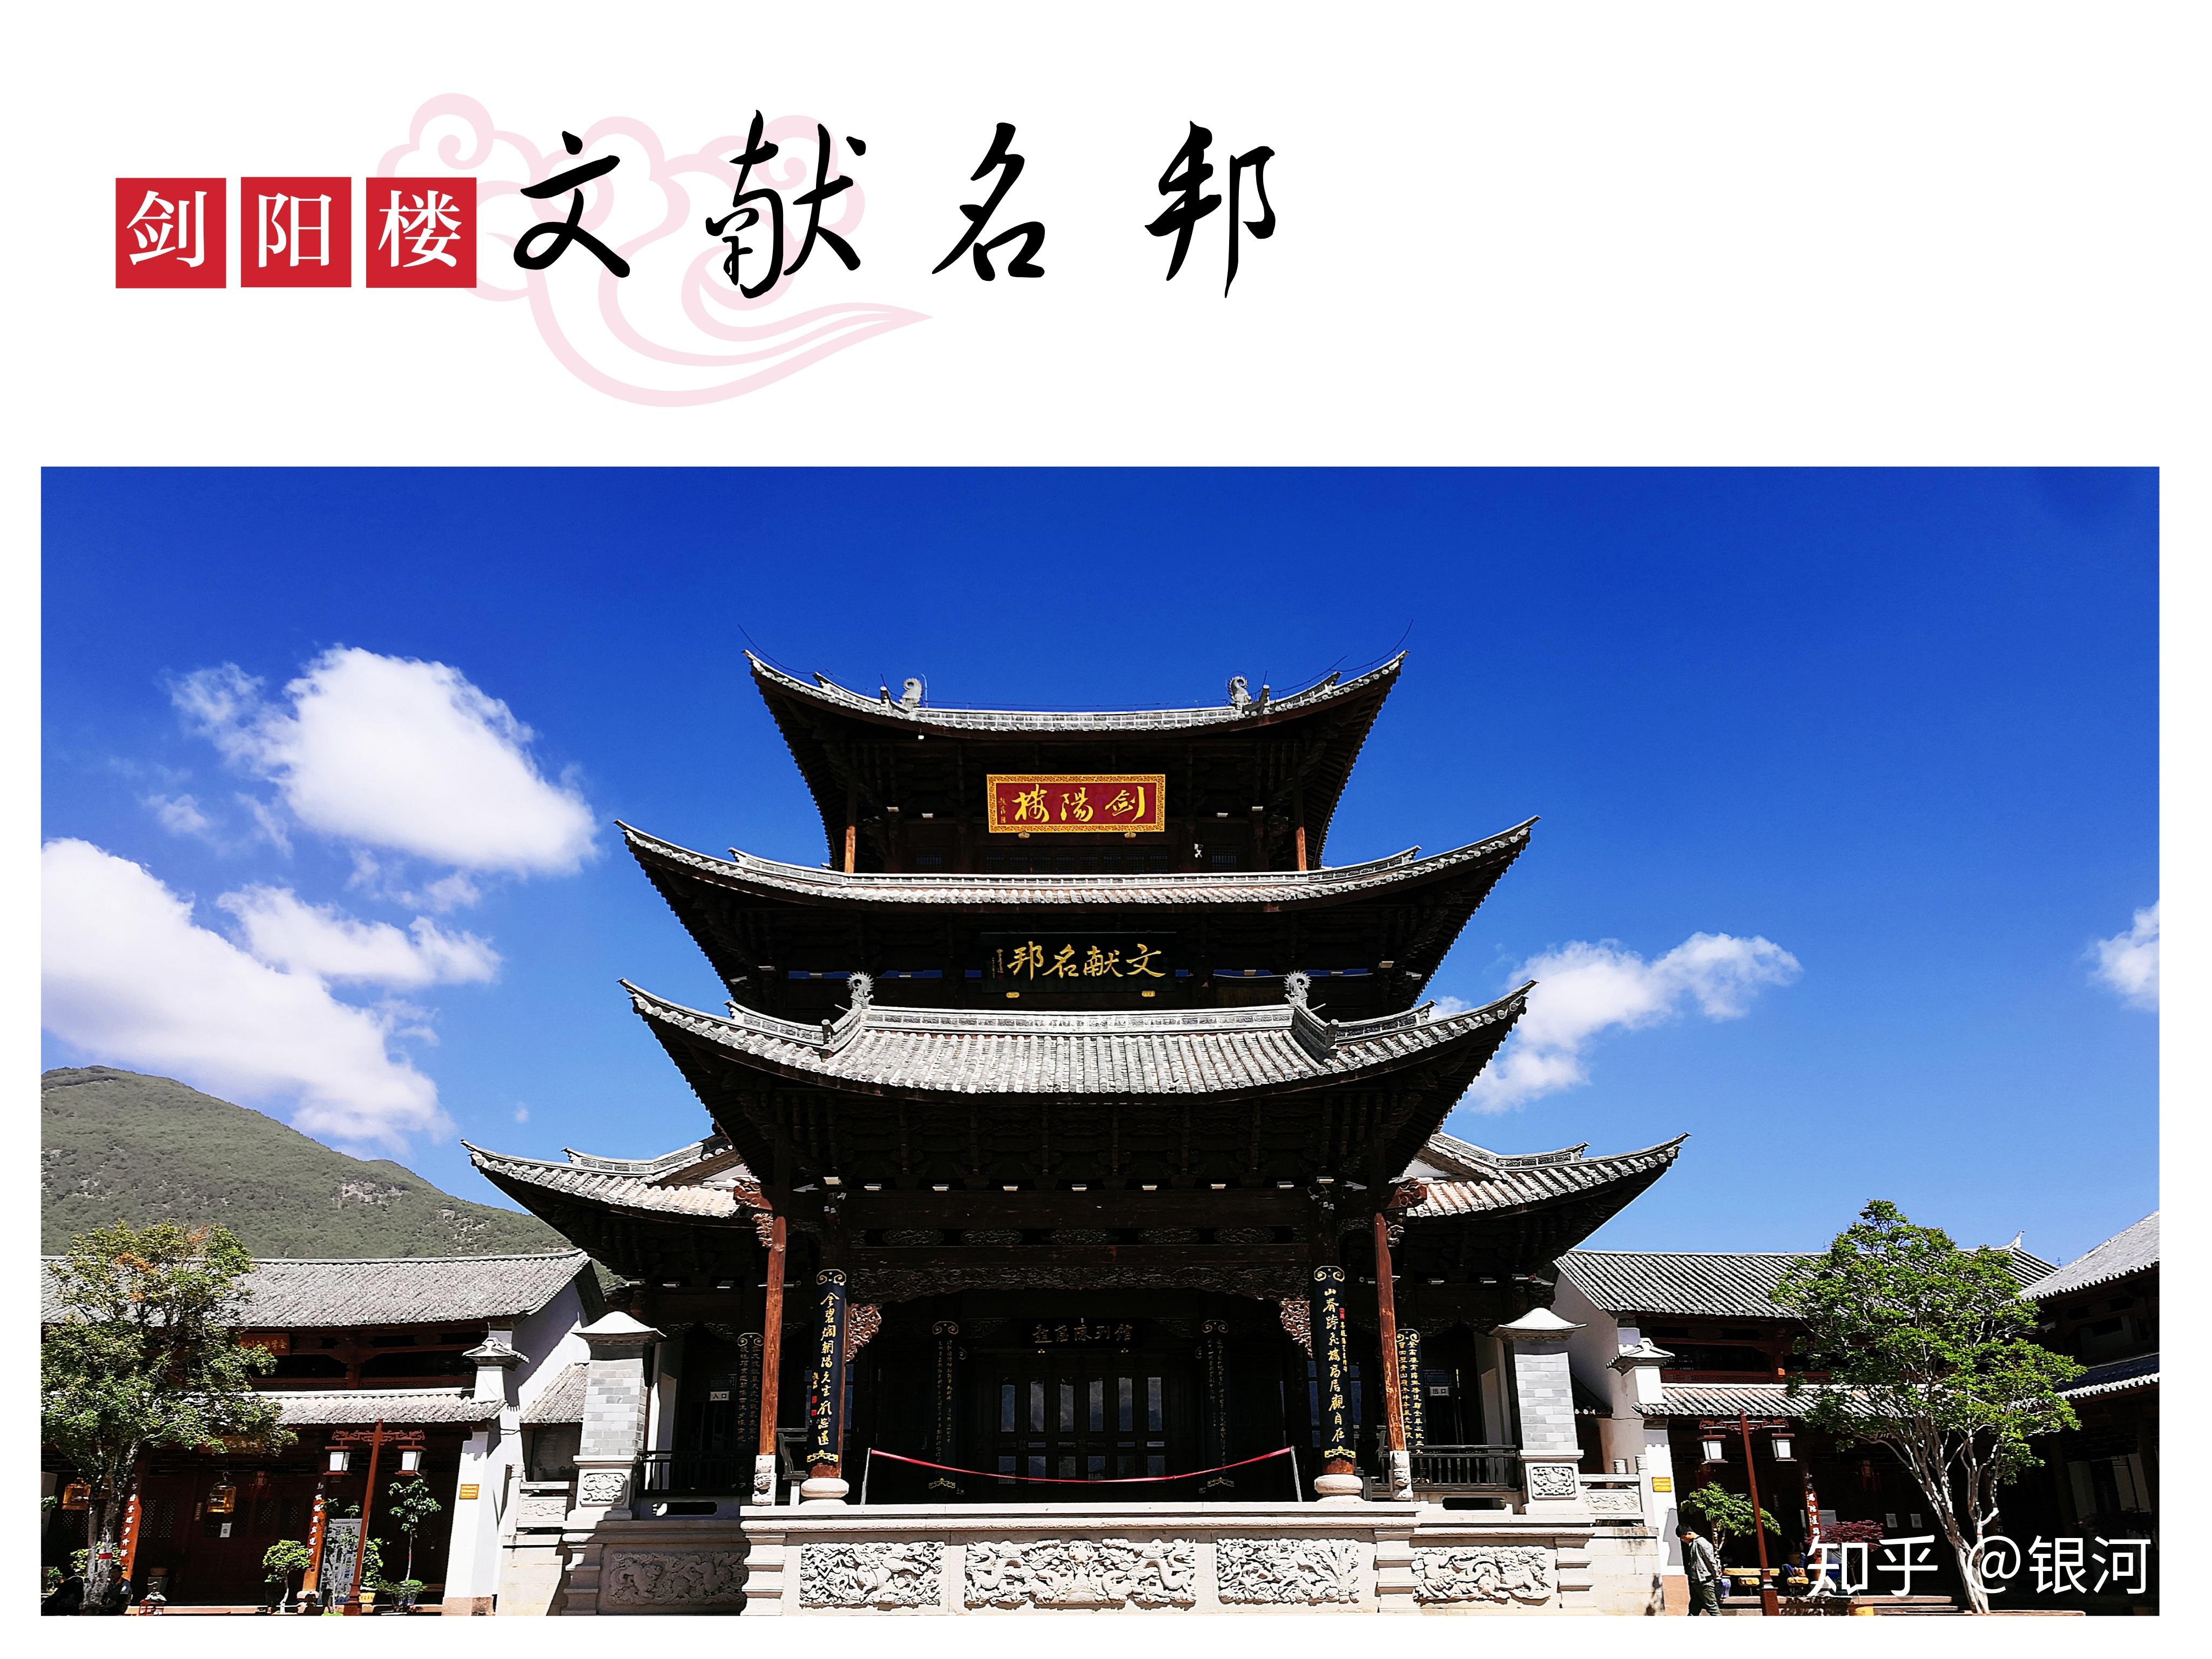 剑川古城,是剑川当地文化的一个缩影,虽然与丽江大研古城以及大理古城